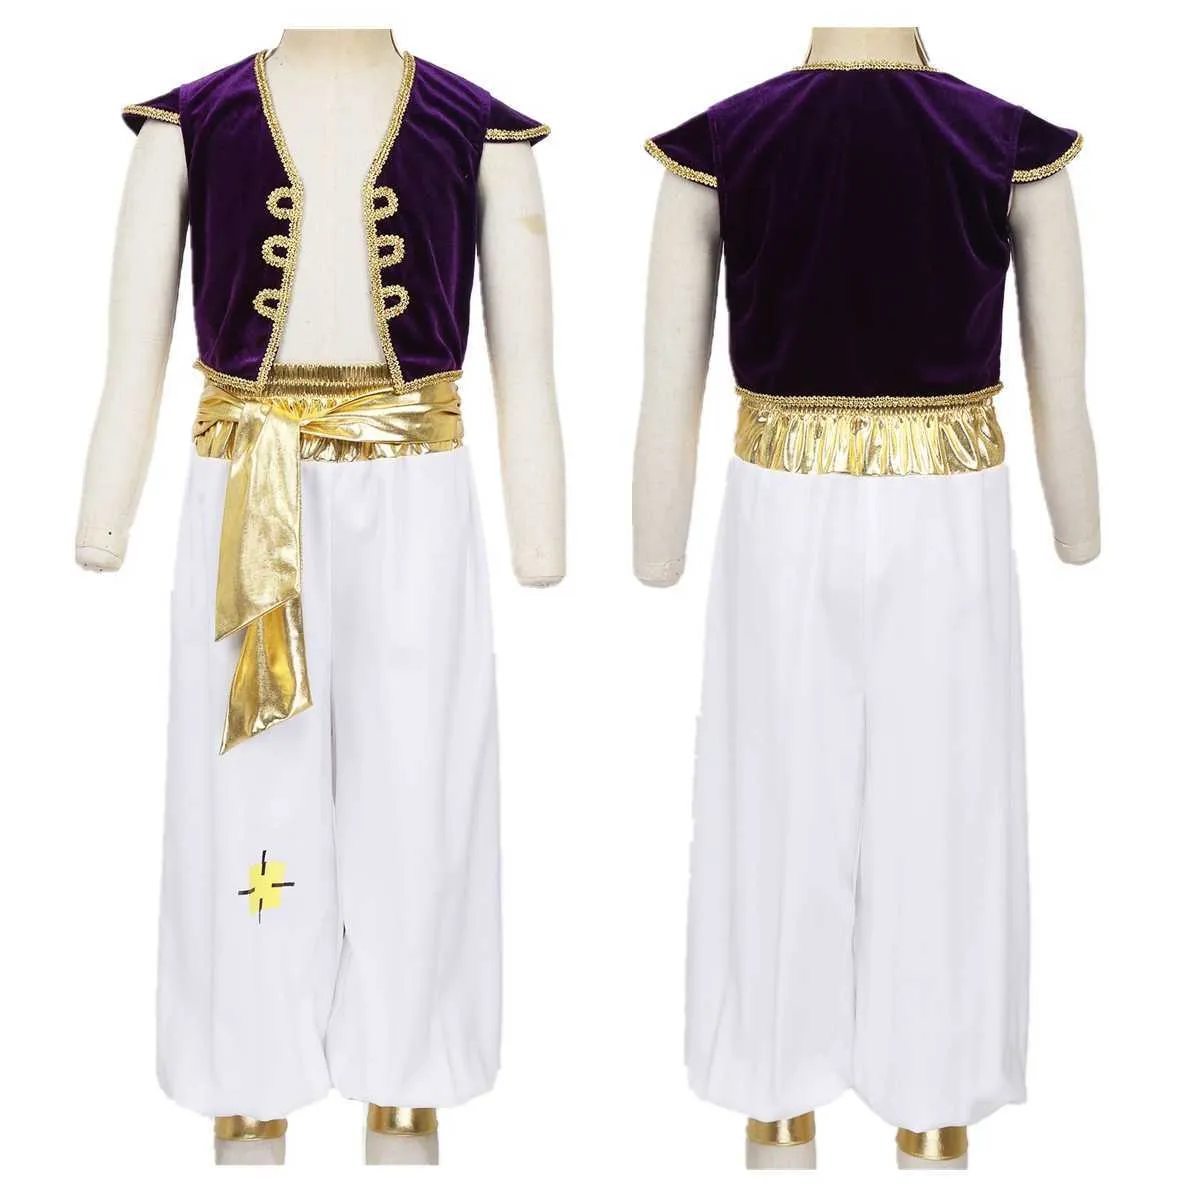 Kinderen Jongens Fancy Arabian Prince Costumes Cap Sleeves Vest met Broek voor Halloween Cosplay Fairy Parties Verkleed Q0910